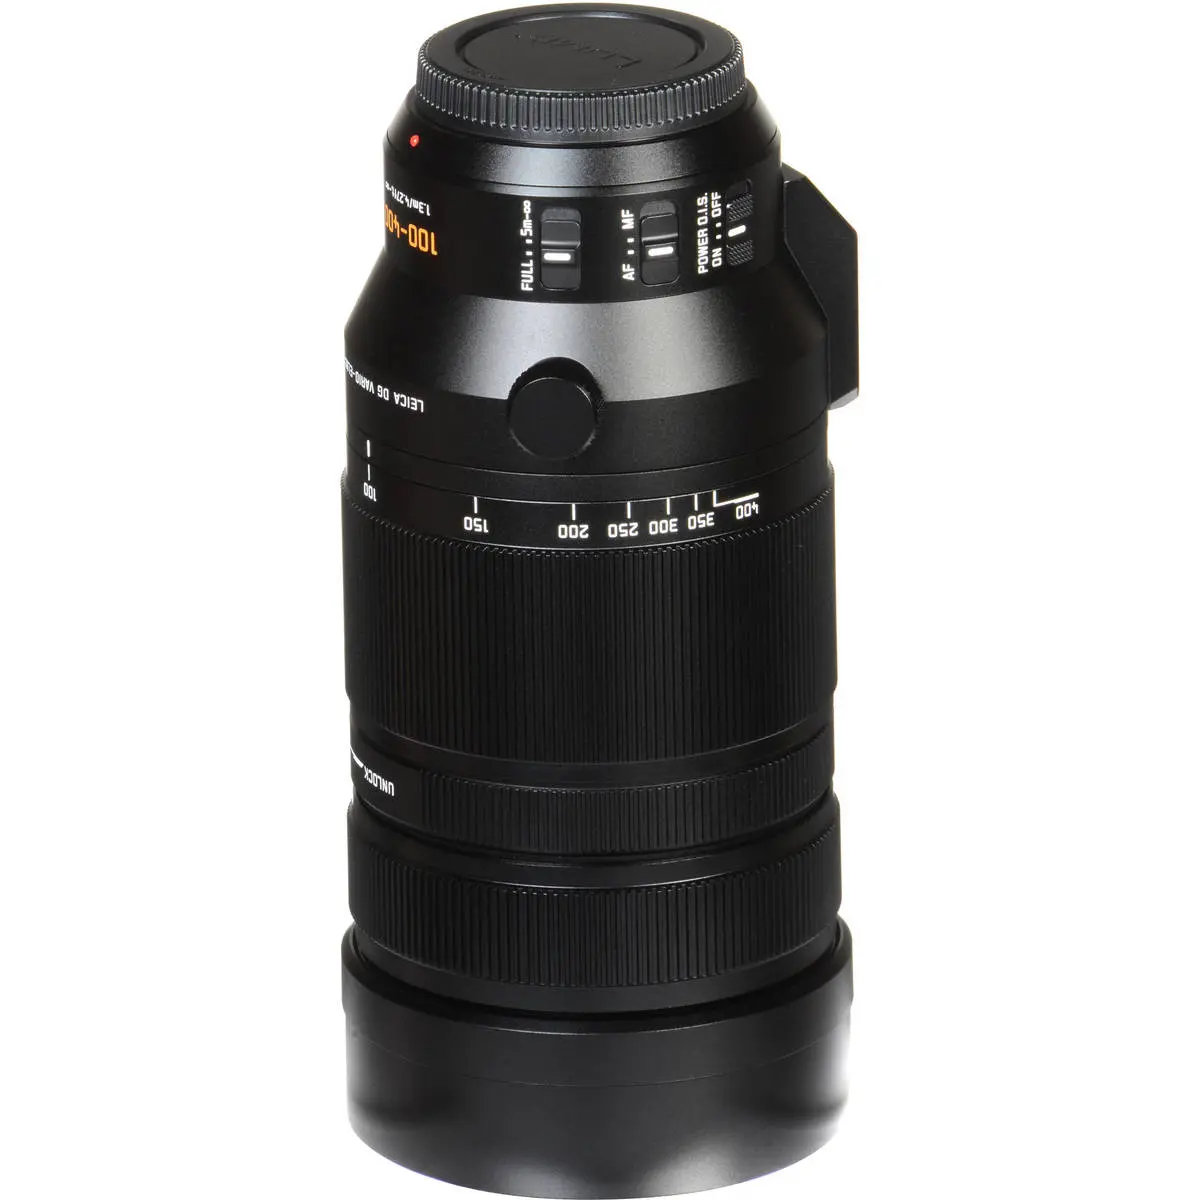 12. Panasonic DG V-Elmar 100-400mm F4.0-6.3 ASPH OIS Lens